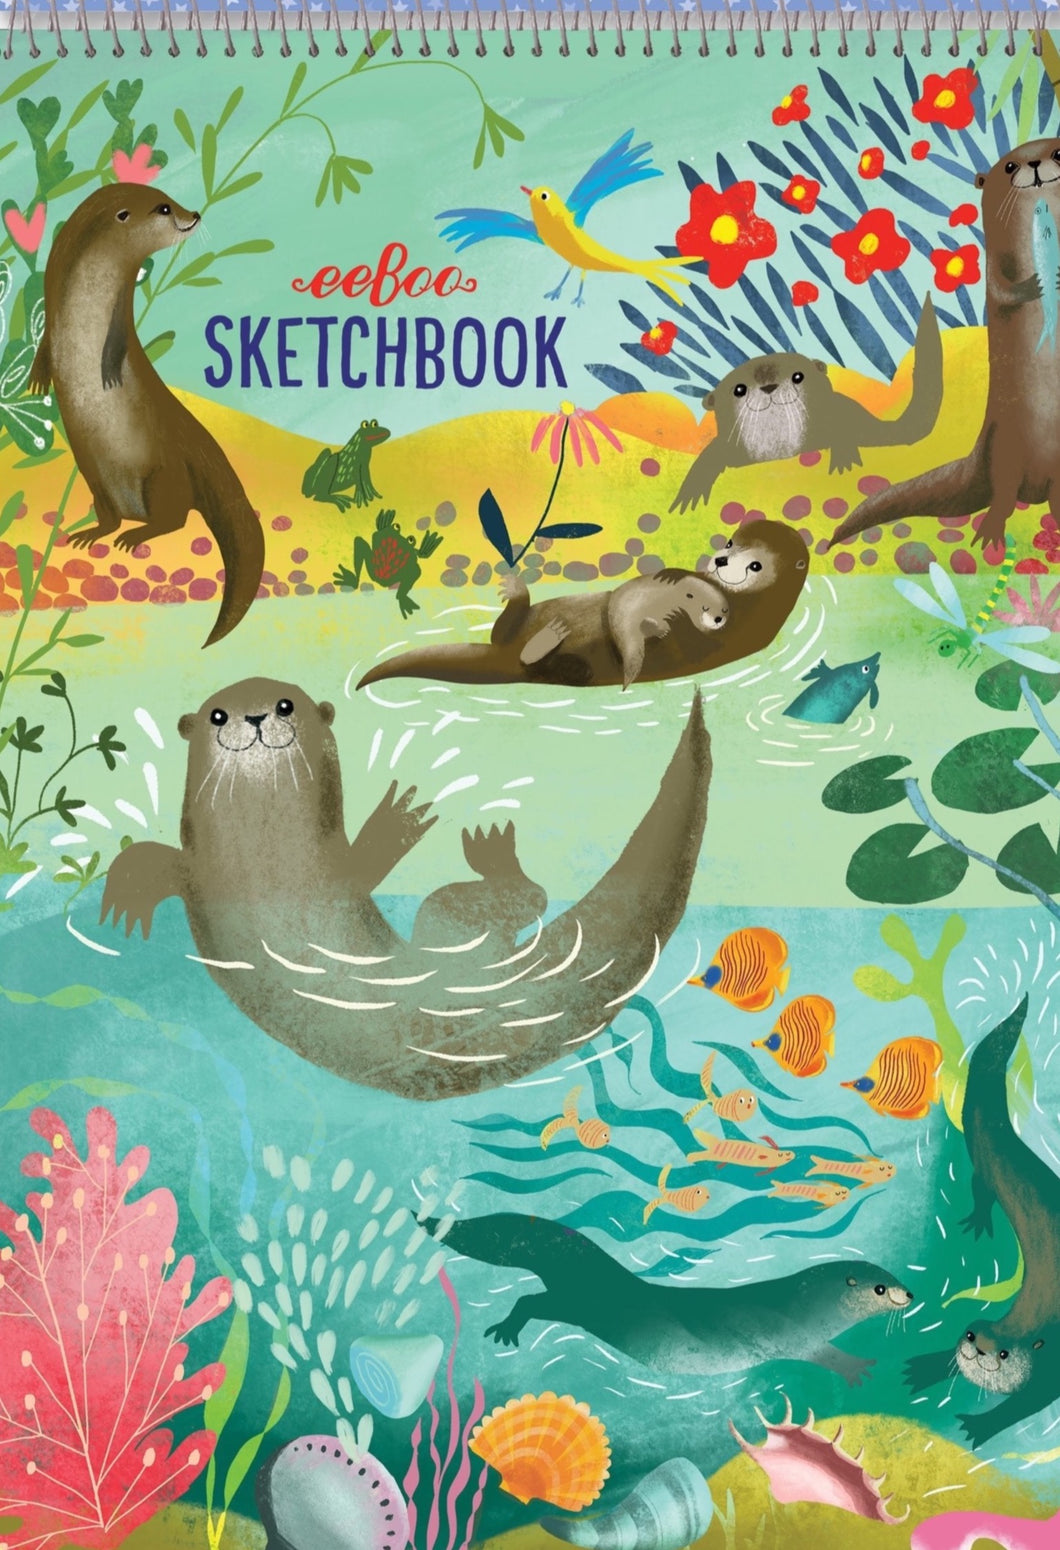 Otter Sketchbook, Eeboo